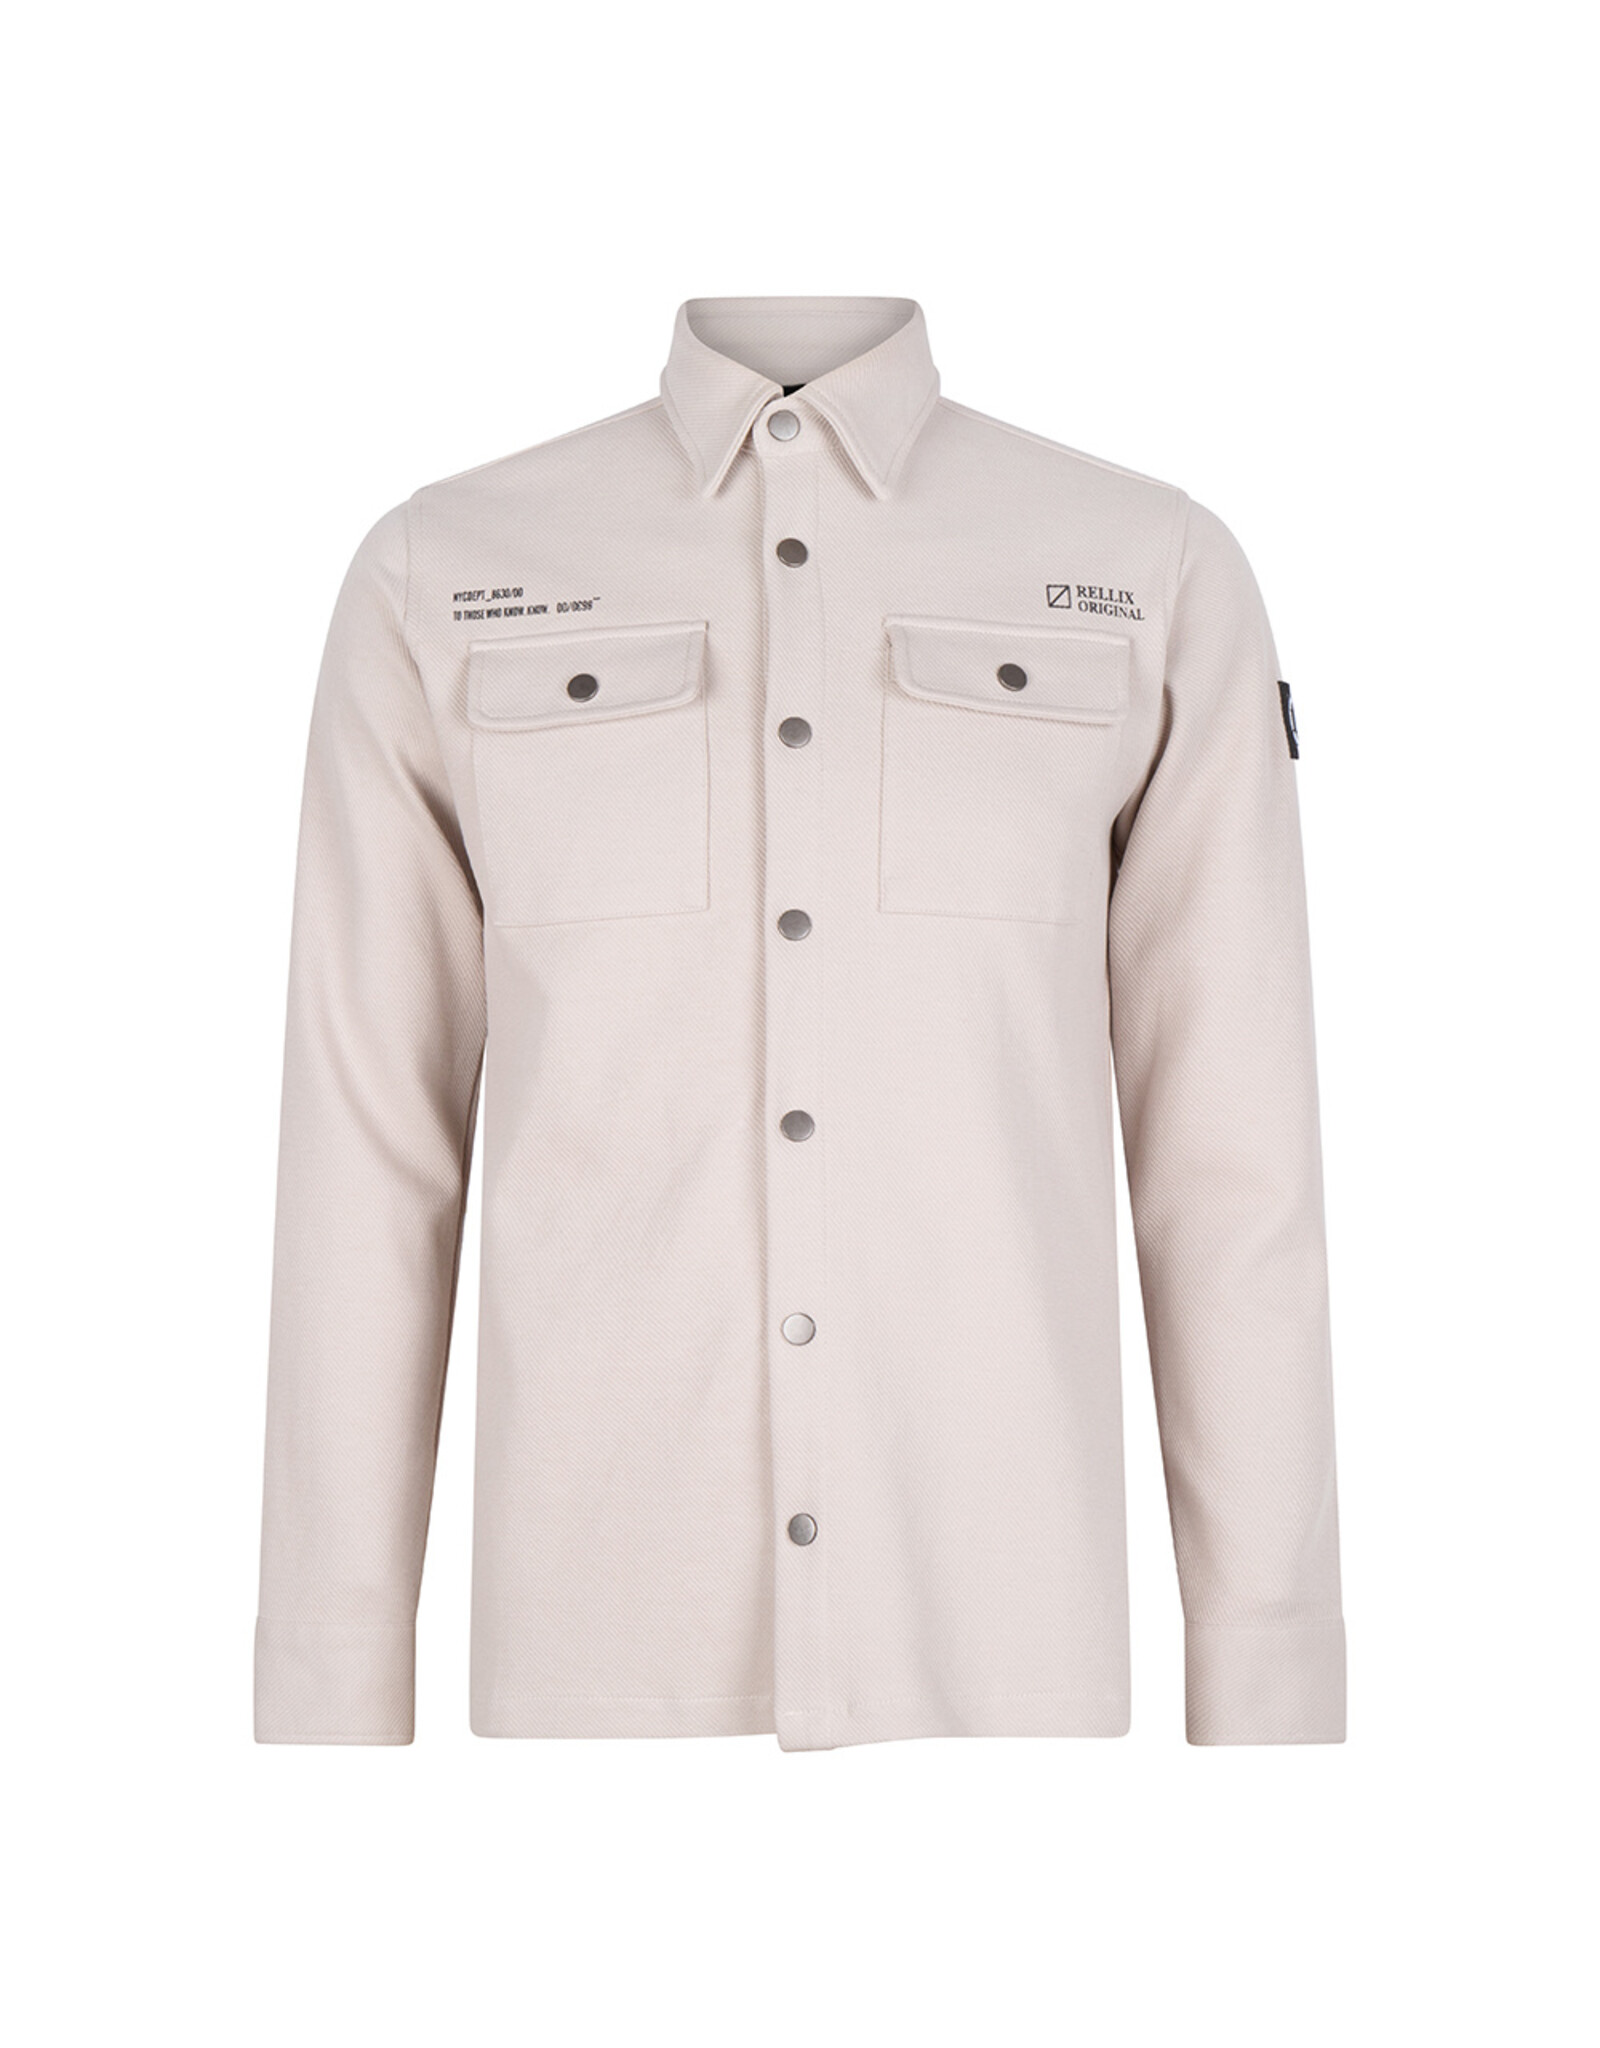 Rellix Shirt Jacket Rellix Grey Kit-731